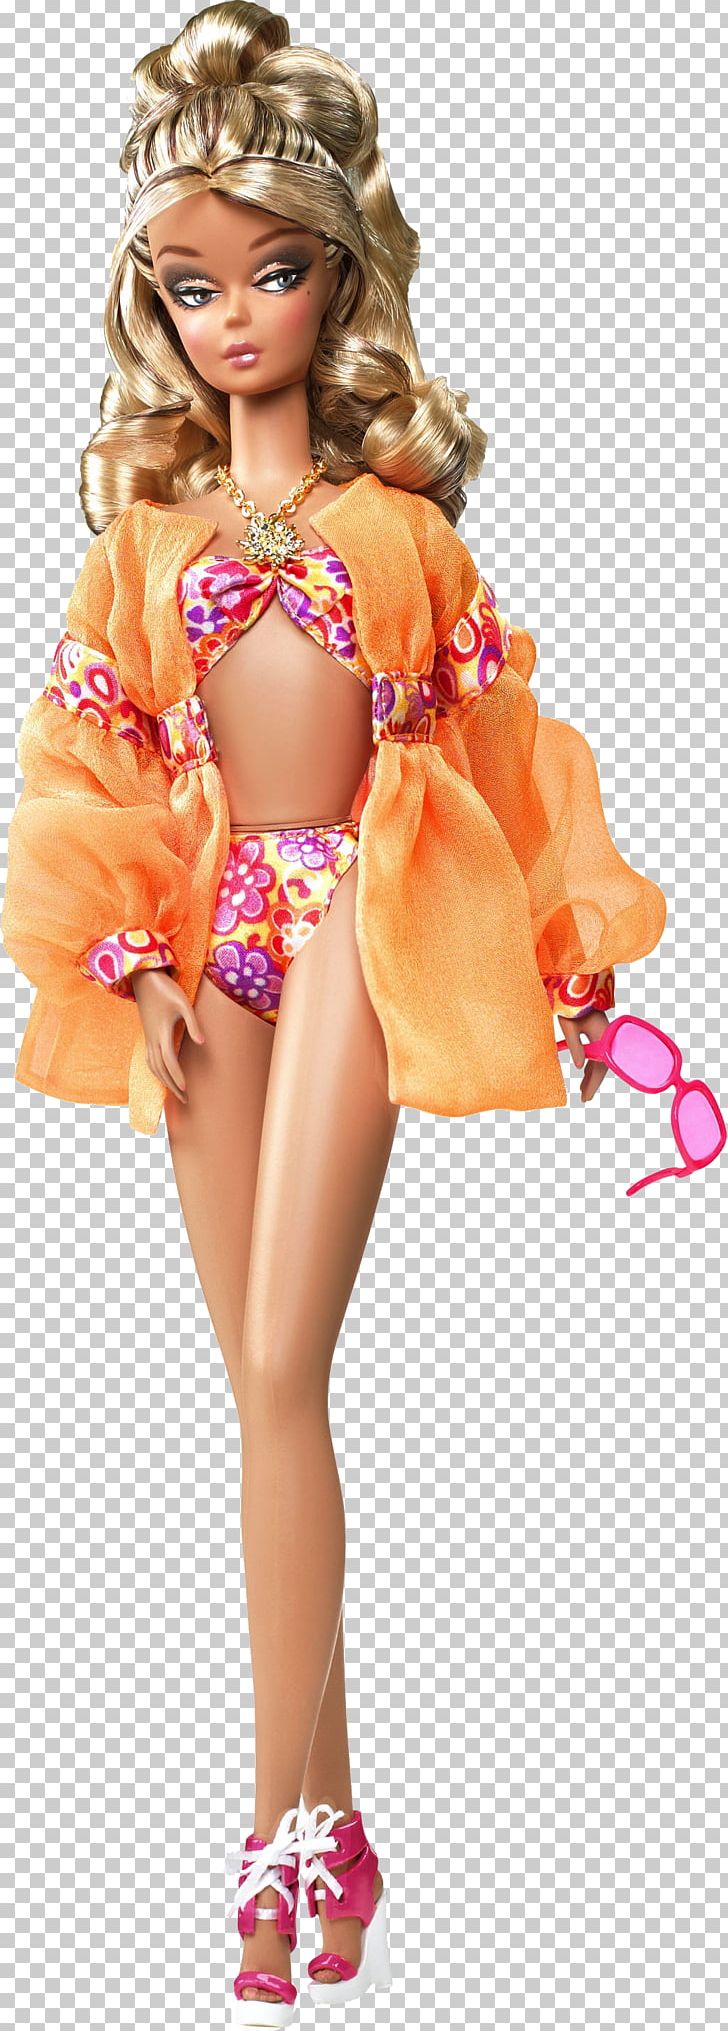 Barbie Fashionistas Ken Doll Violette Barbie Doll PNG, Clipart, Art, Barbie, Barbie Fashionistas Ken Doll, Barbie Fashion Model Collection, Clothing Free PNG Download